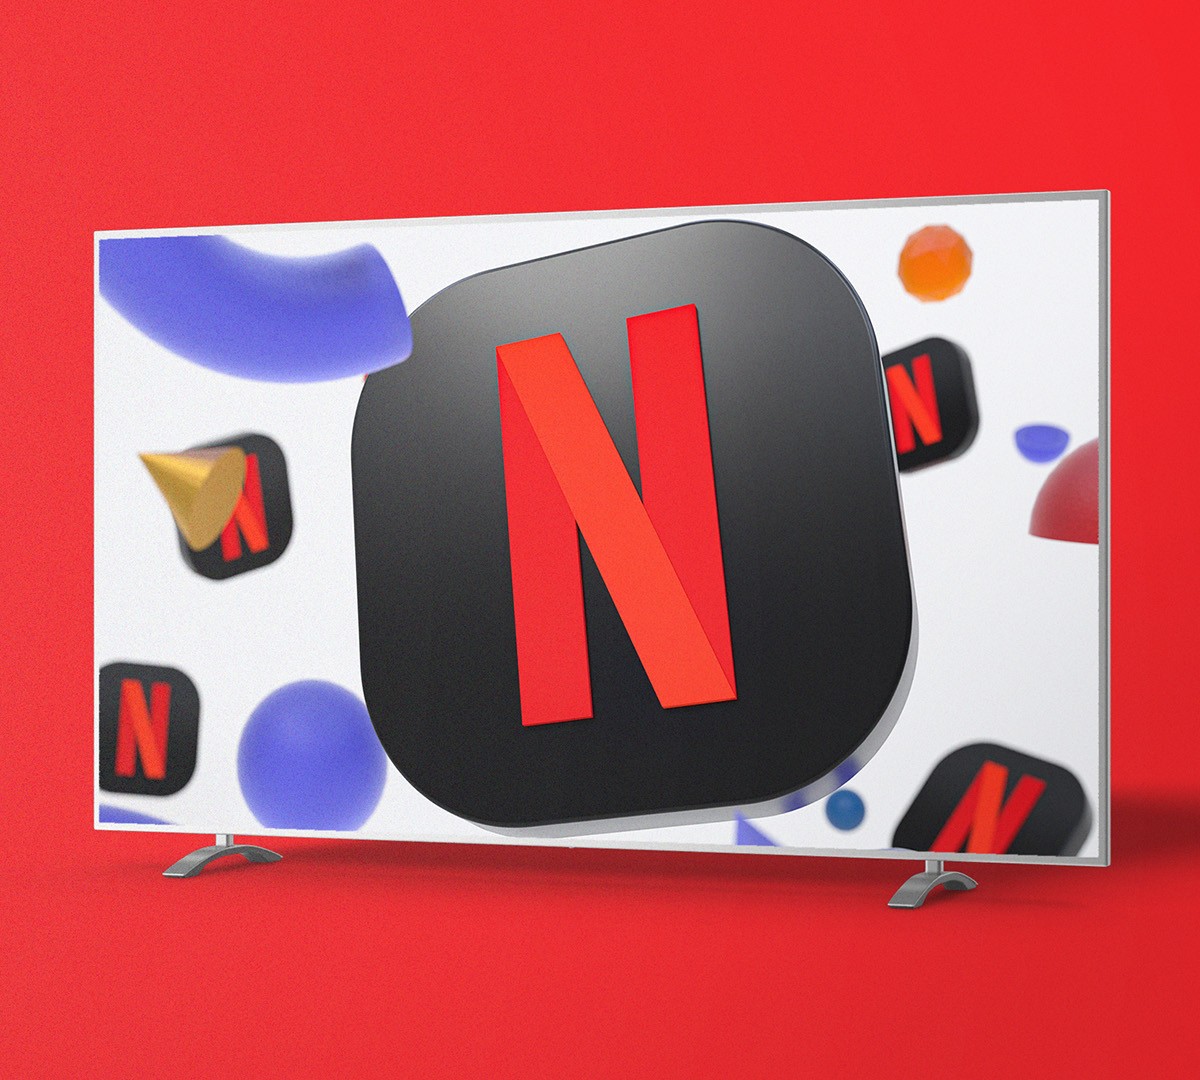 Netflix grátis em 2020: site libera filmes e séries para assistir